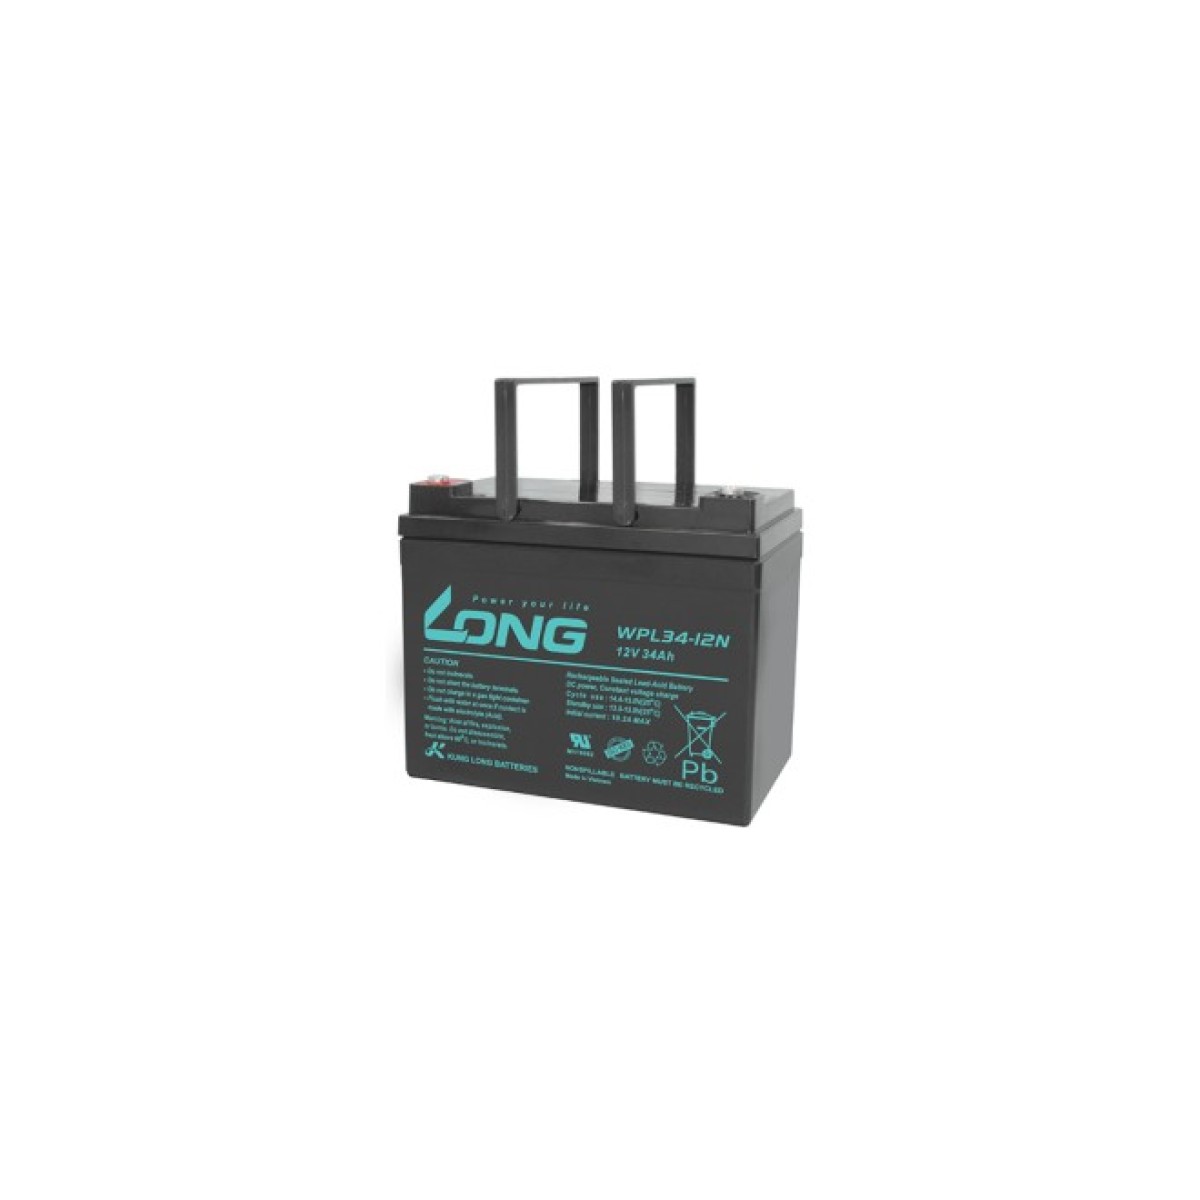 Батарея к ИБП Long 12V-34Ah, WPL34-12N (WPL34-12N) 256_256.jpg